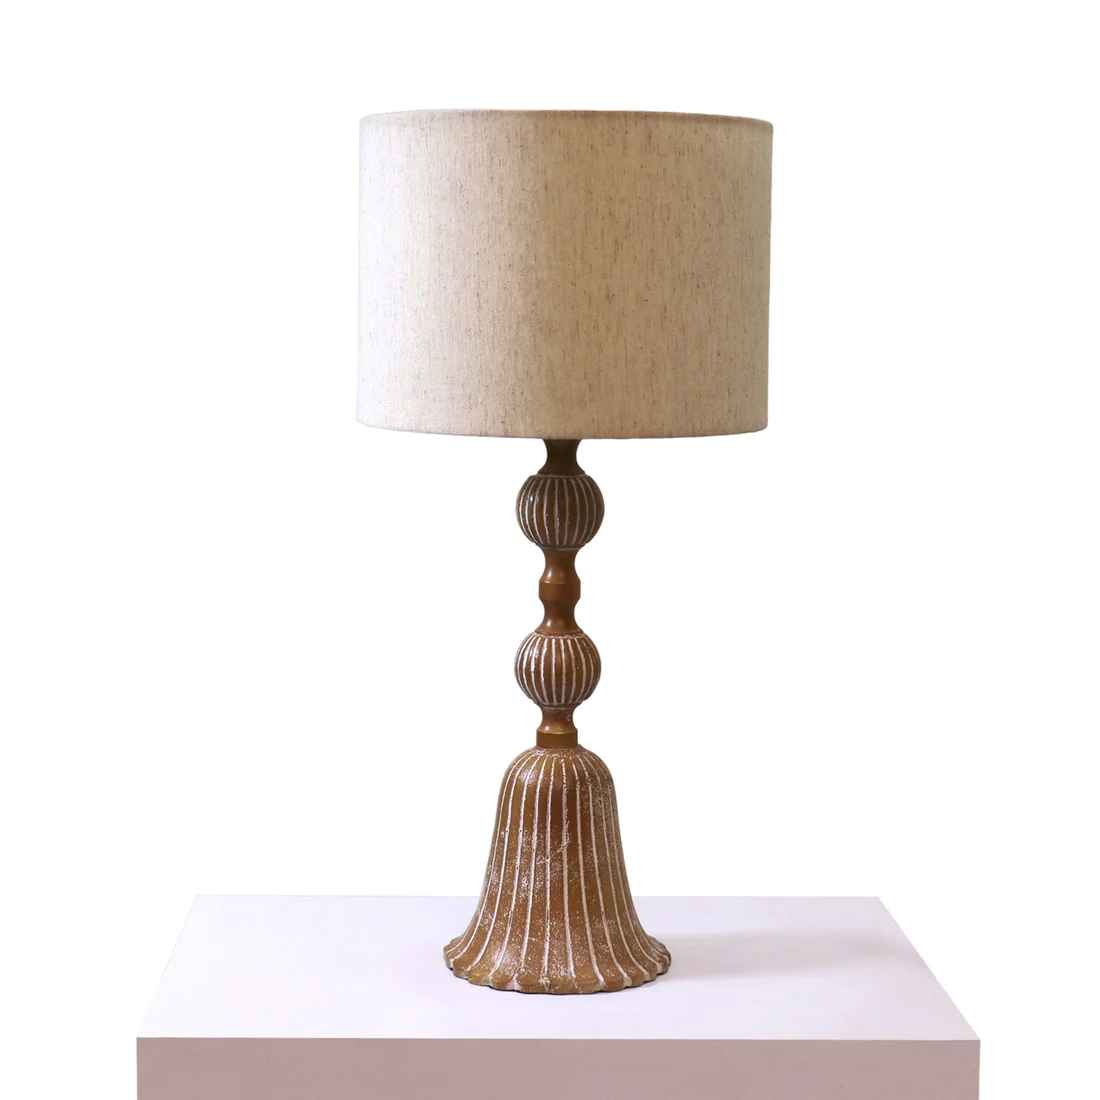 Lars' Table Lamp